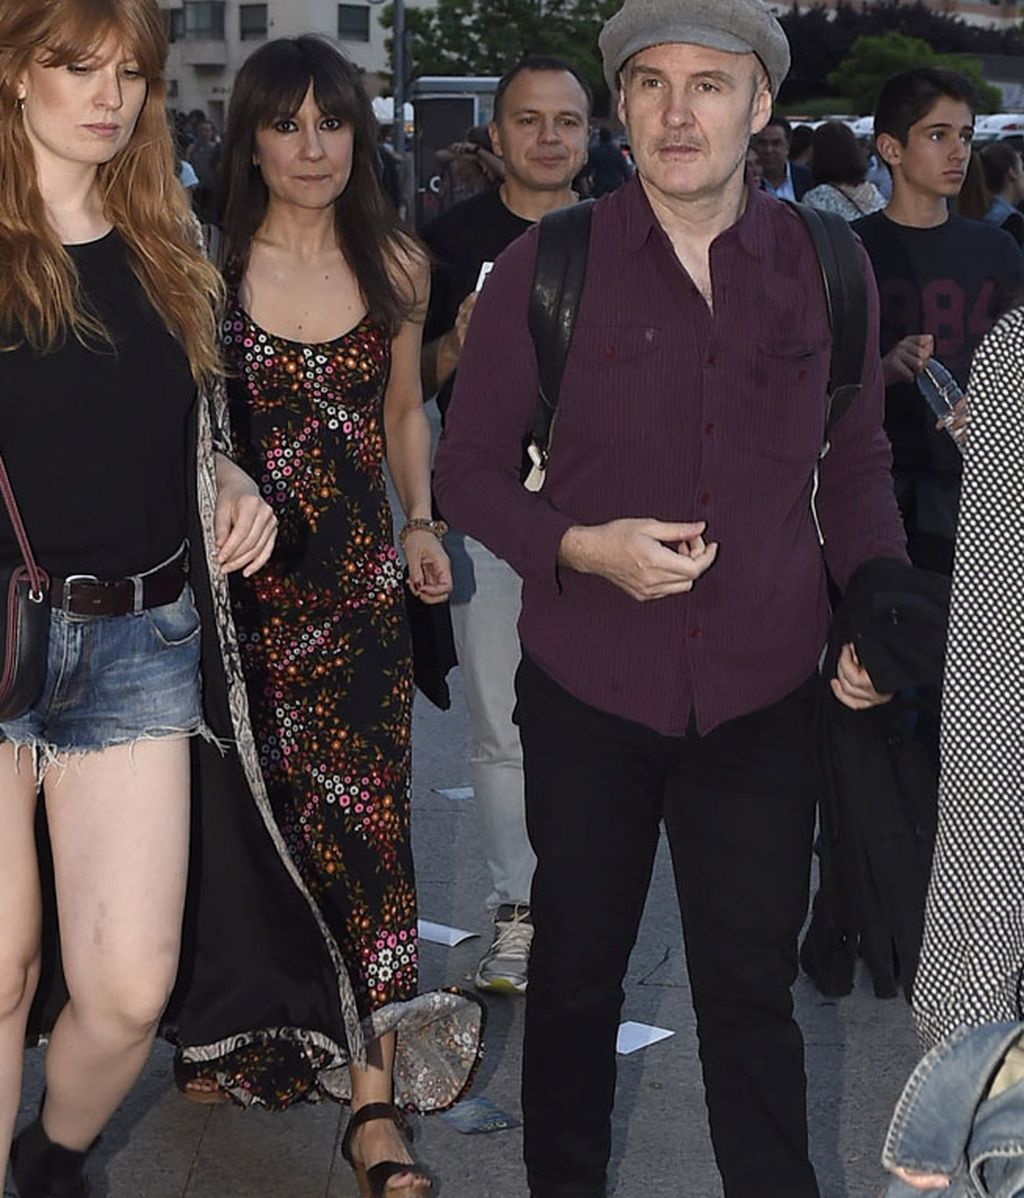 Ana Fernández y Adrián Roma, Tania Llasera... 'Let's rock' vip en el concierto de McCartney